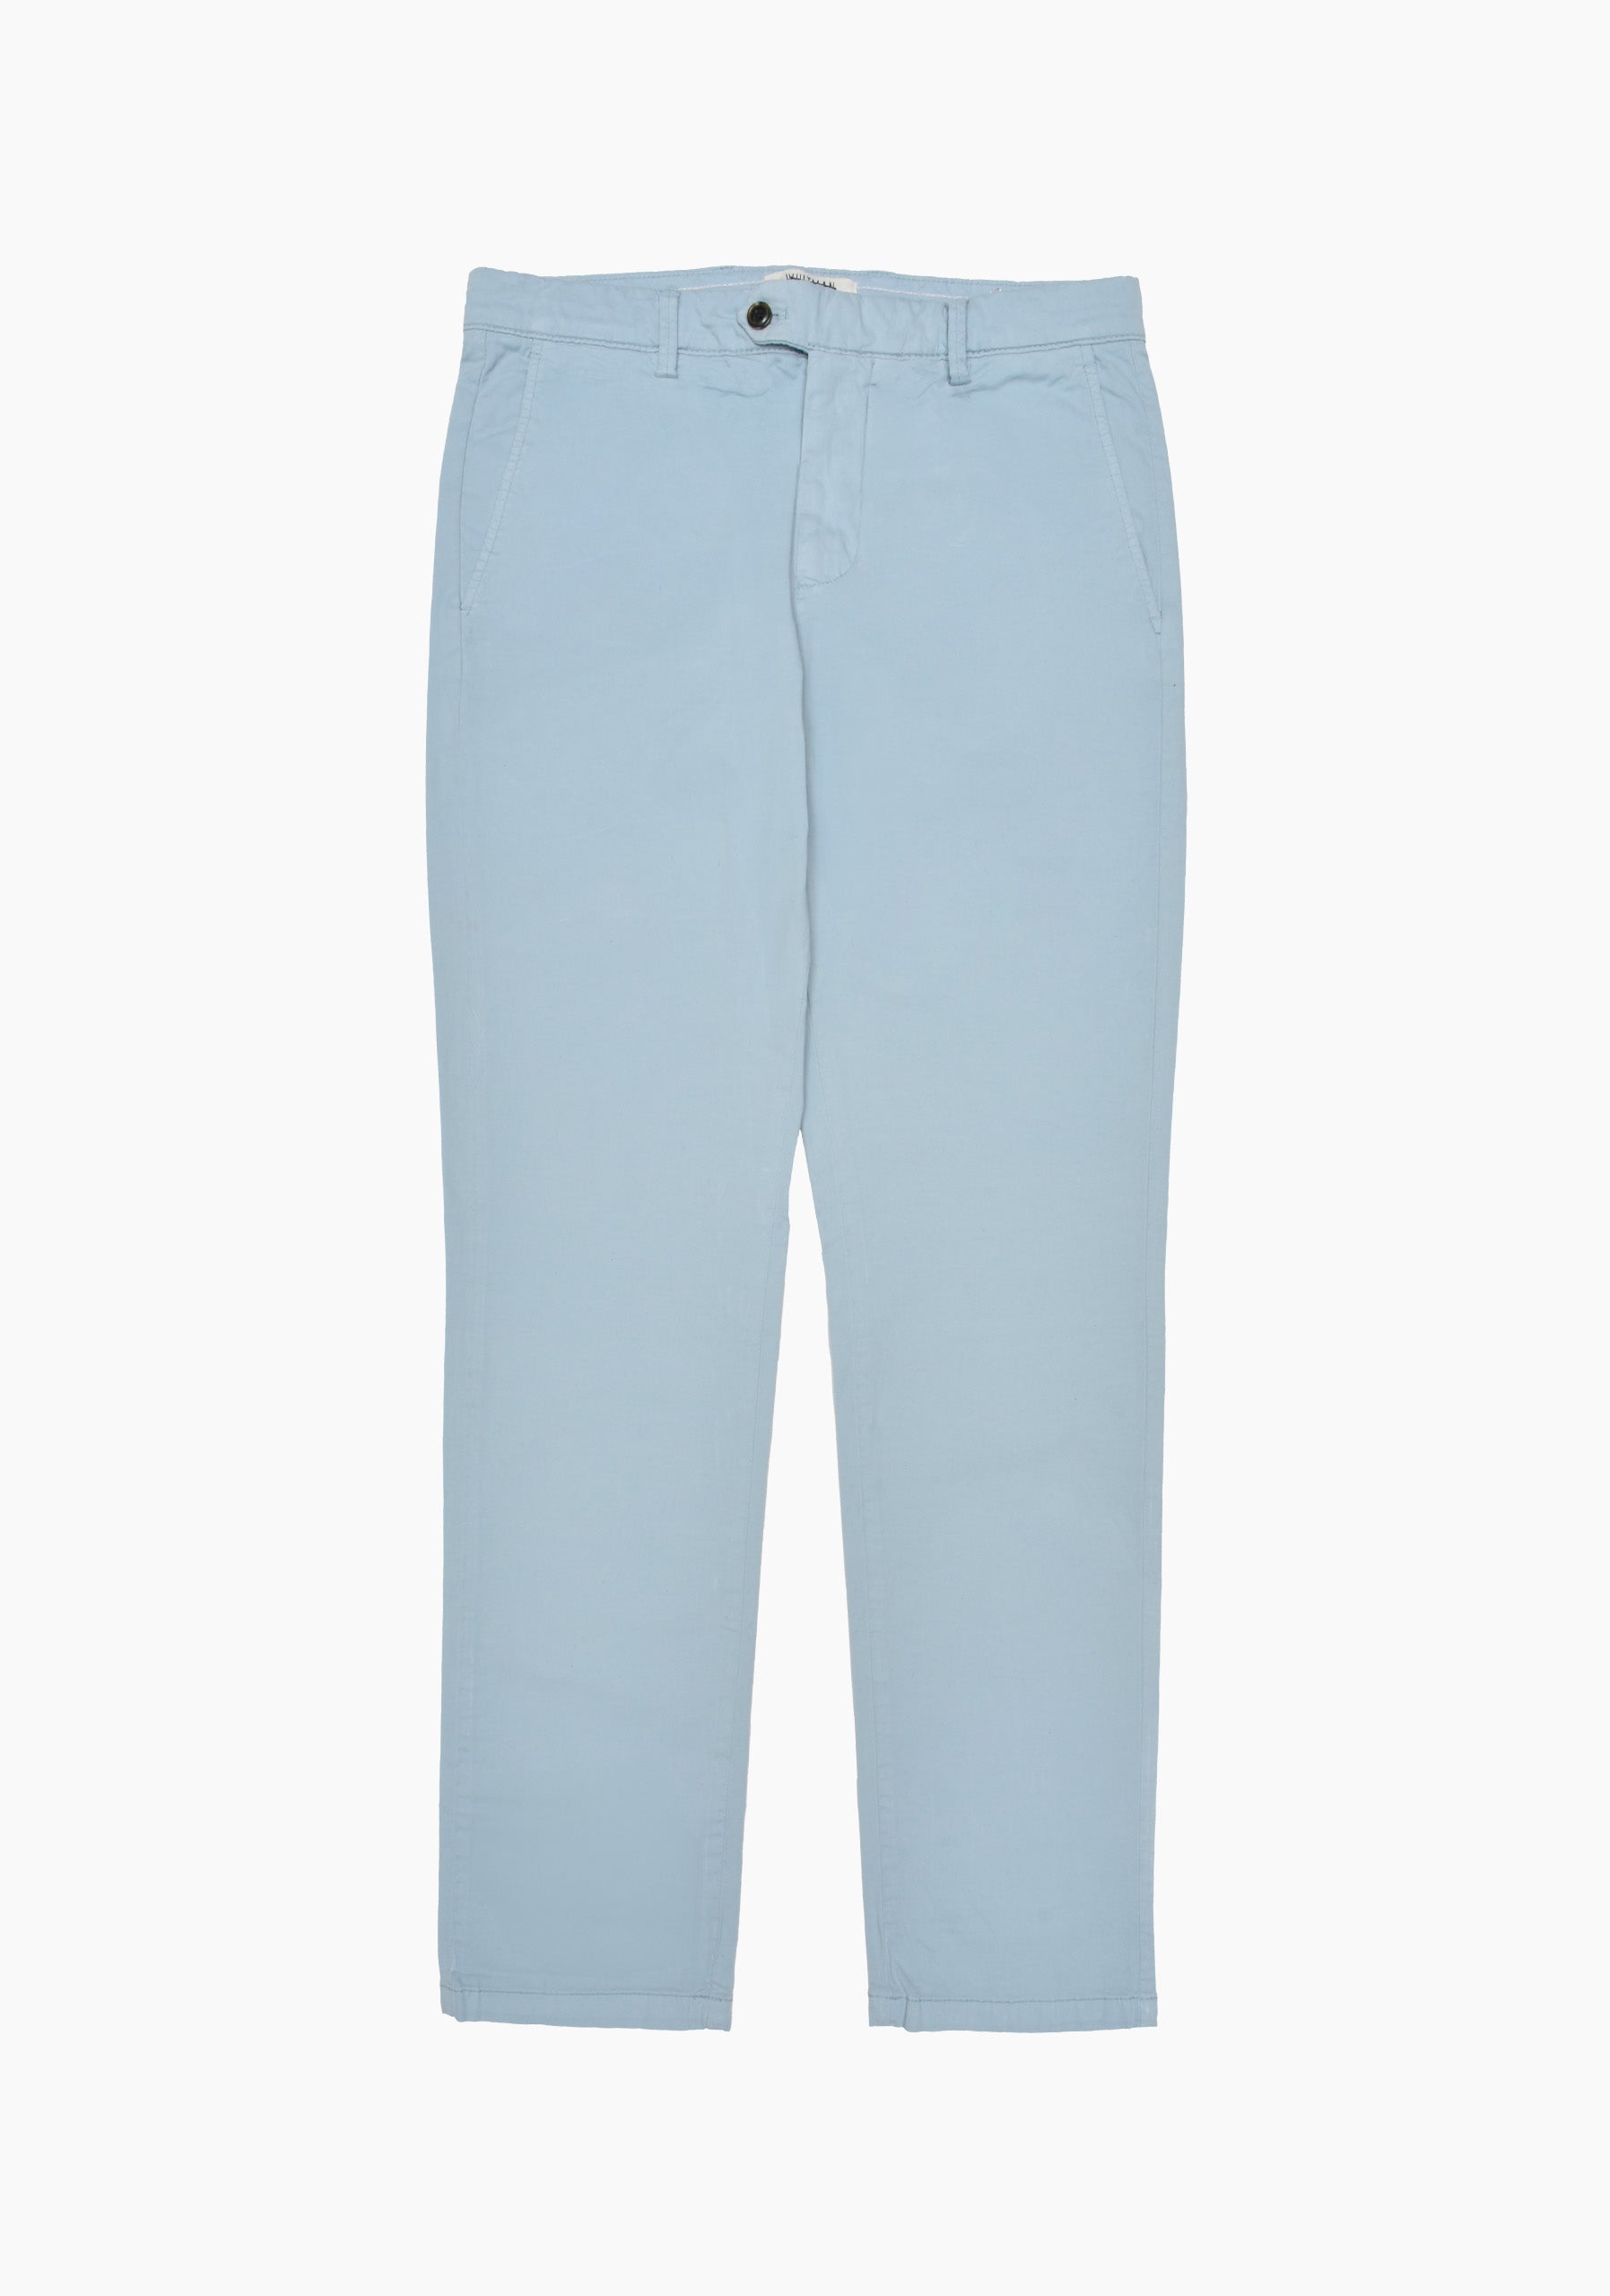 Pantalon Chino Gris Azulado